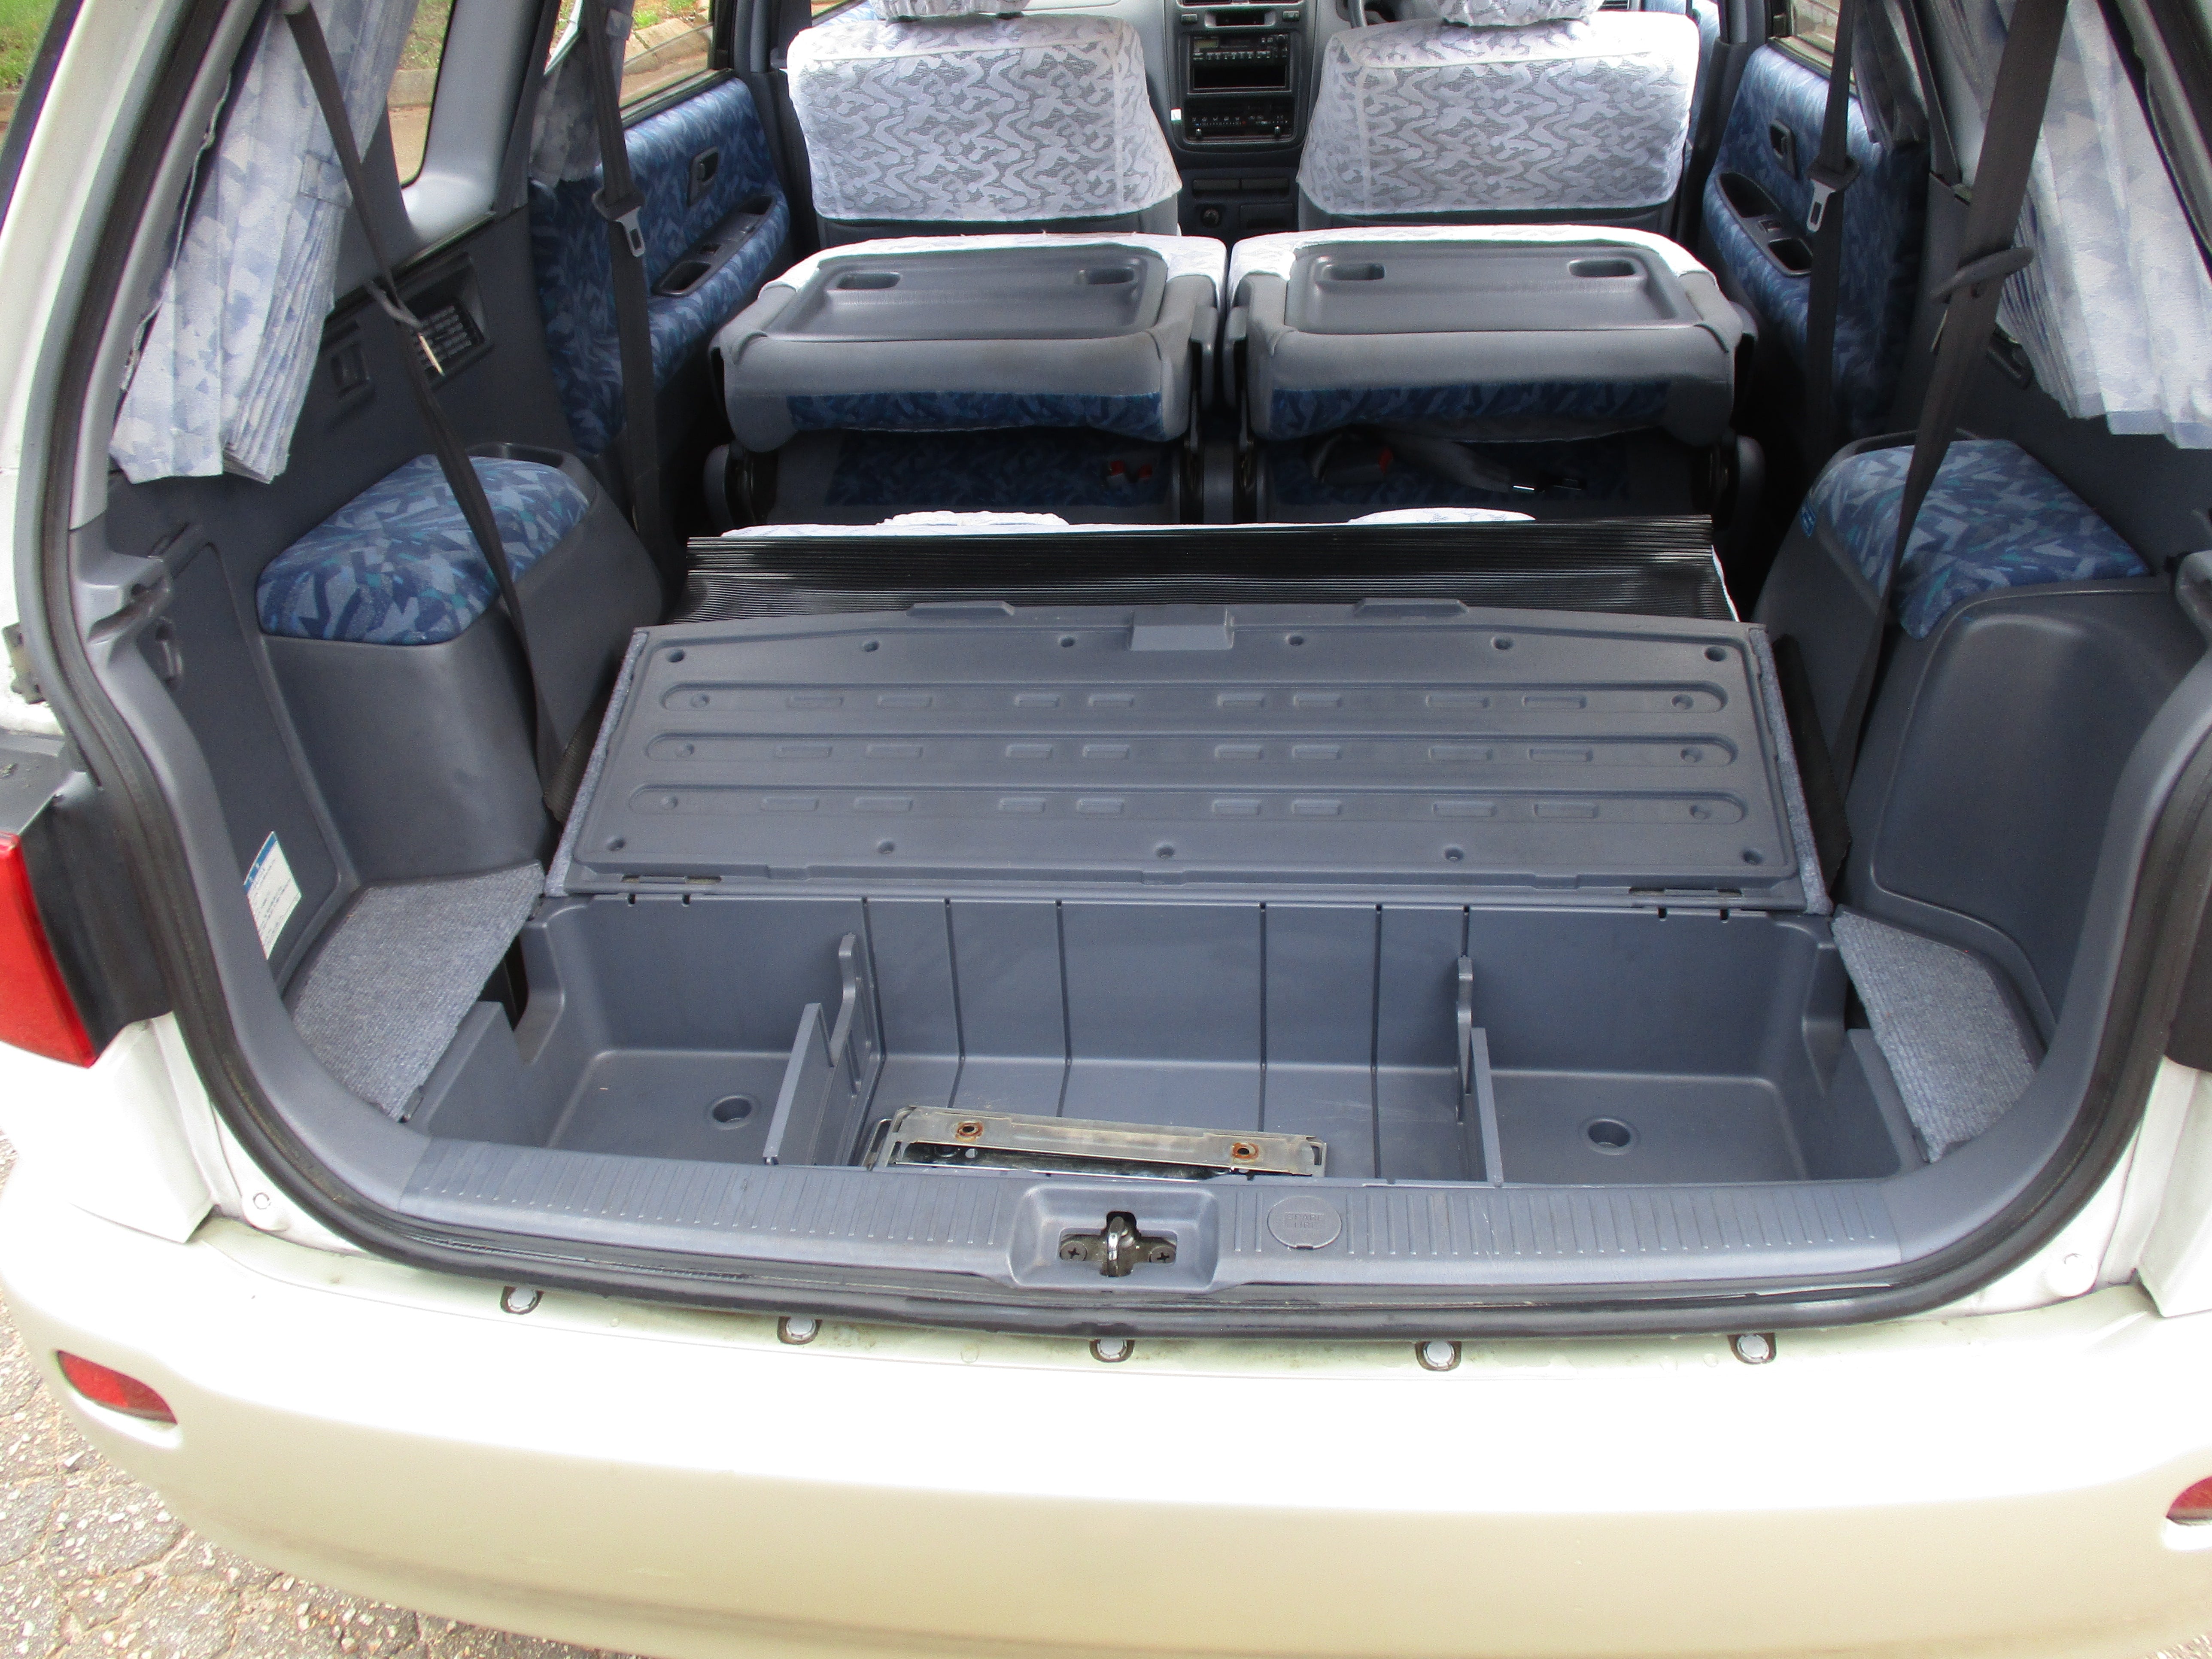 JDM 97 Toyota Ipsum RHD Van Pending Sale